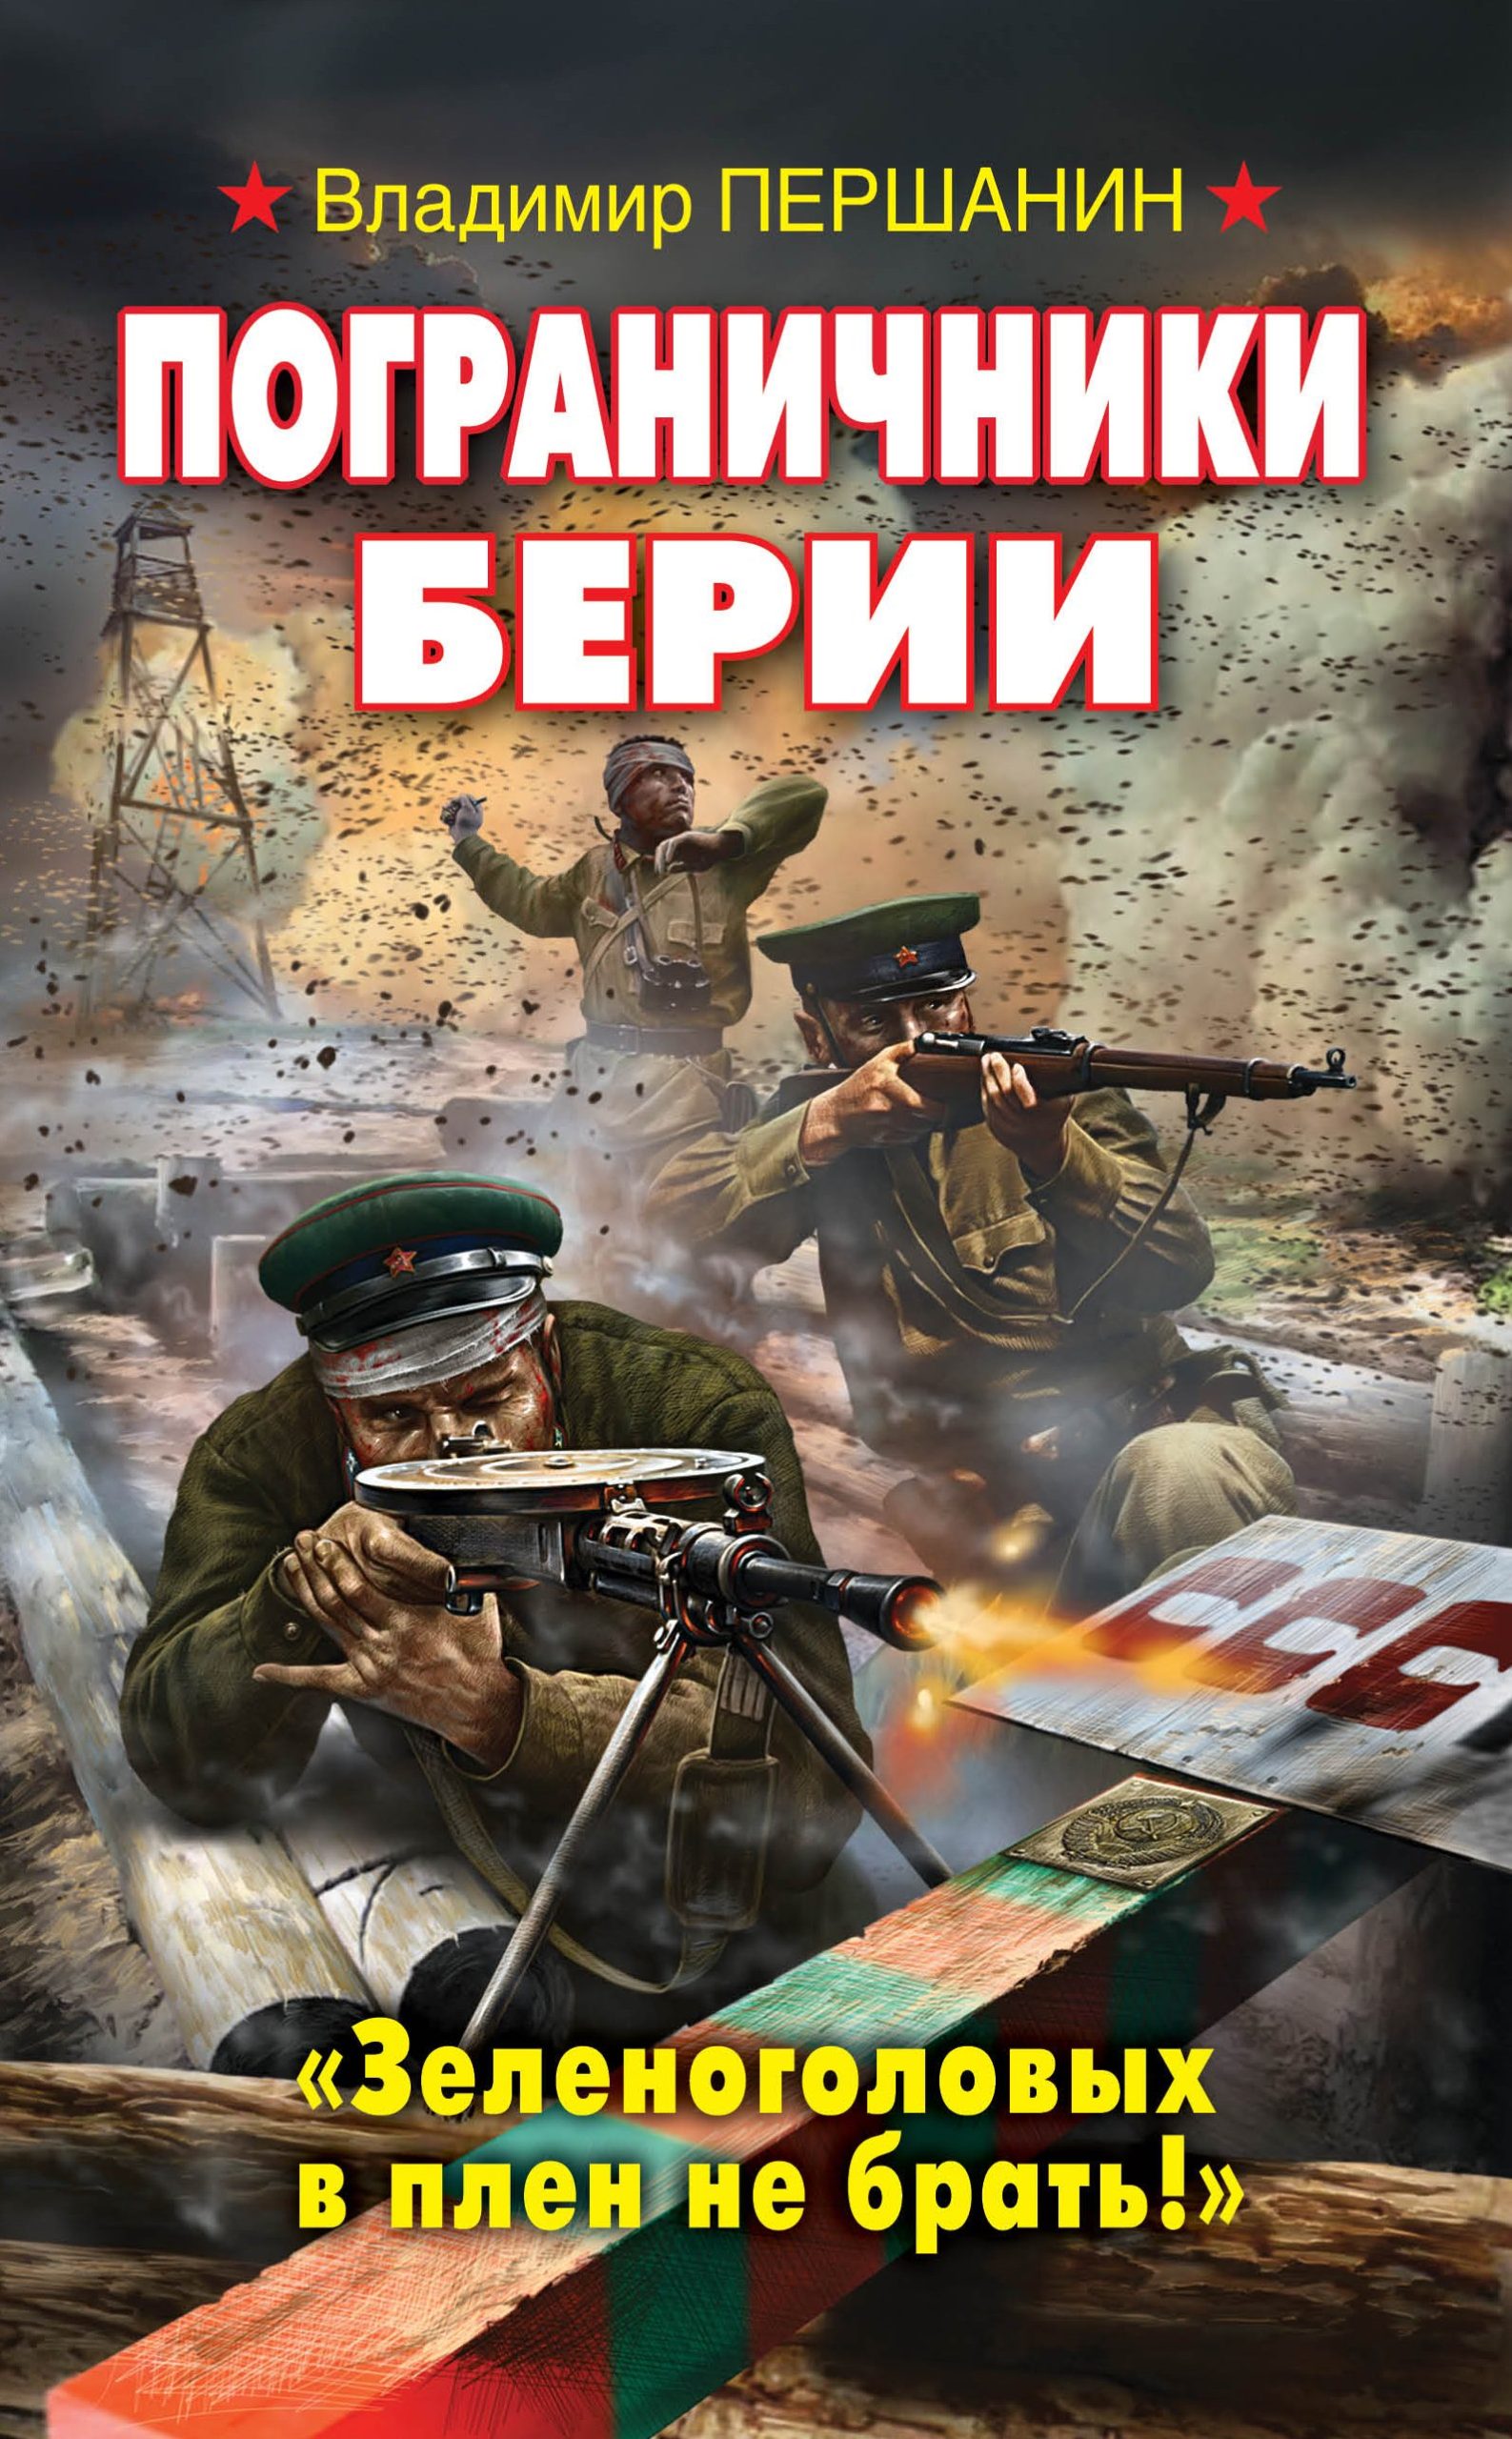 Заградотряд НКВД